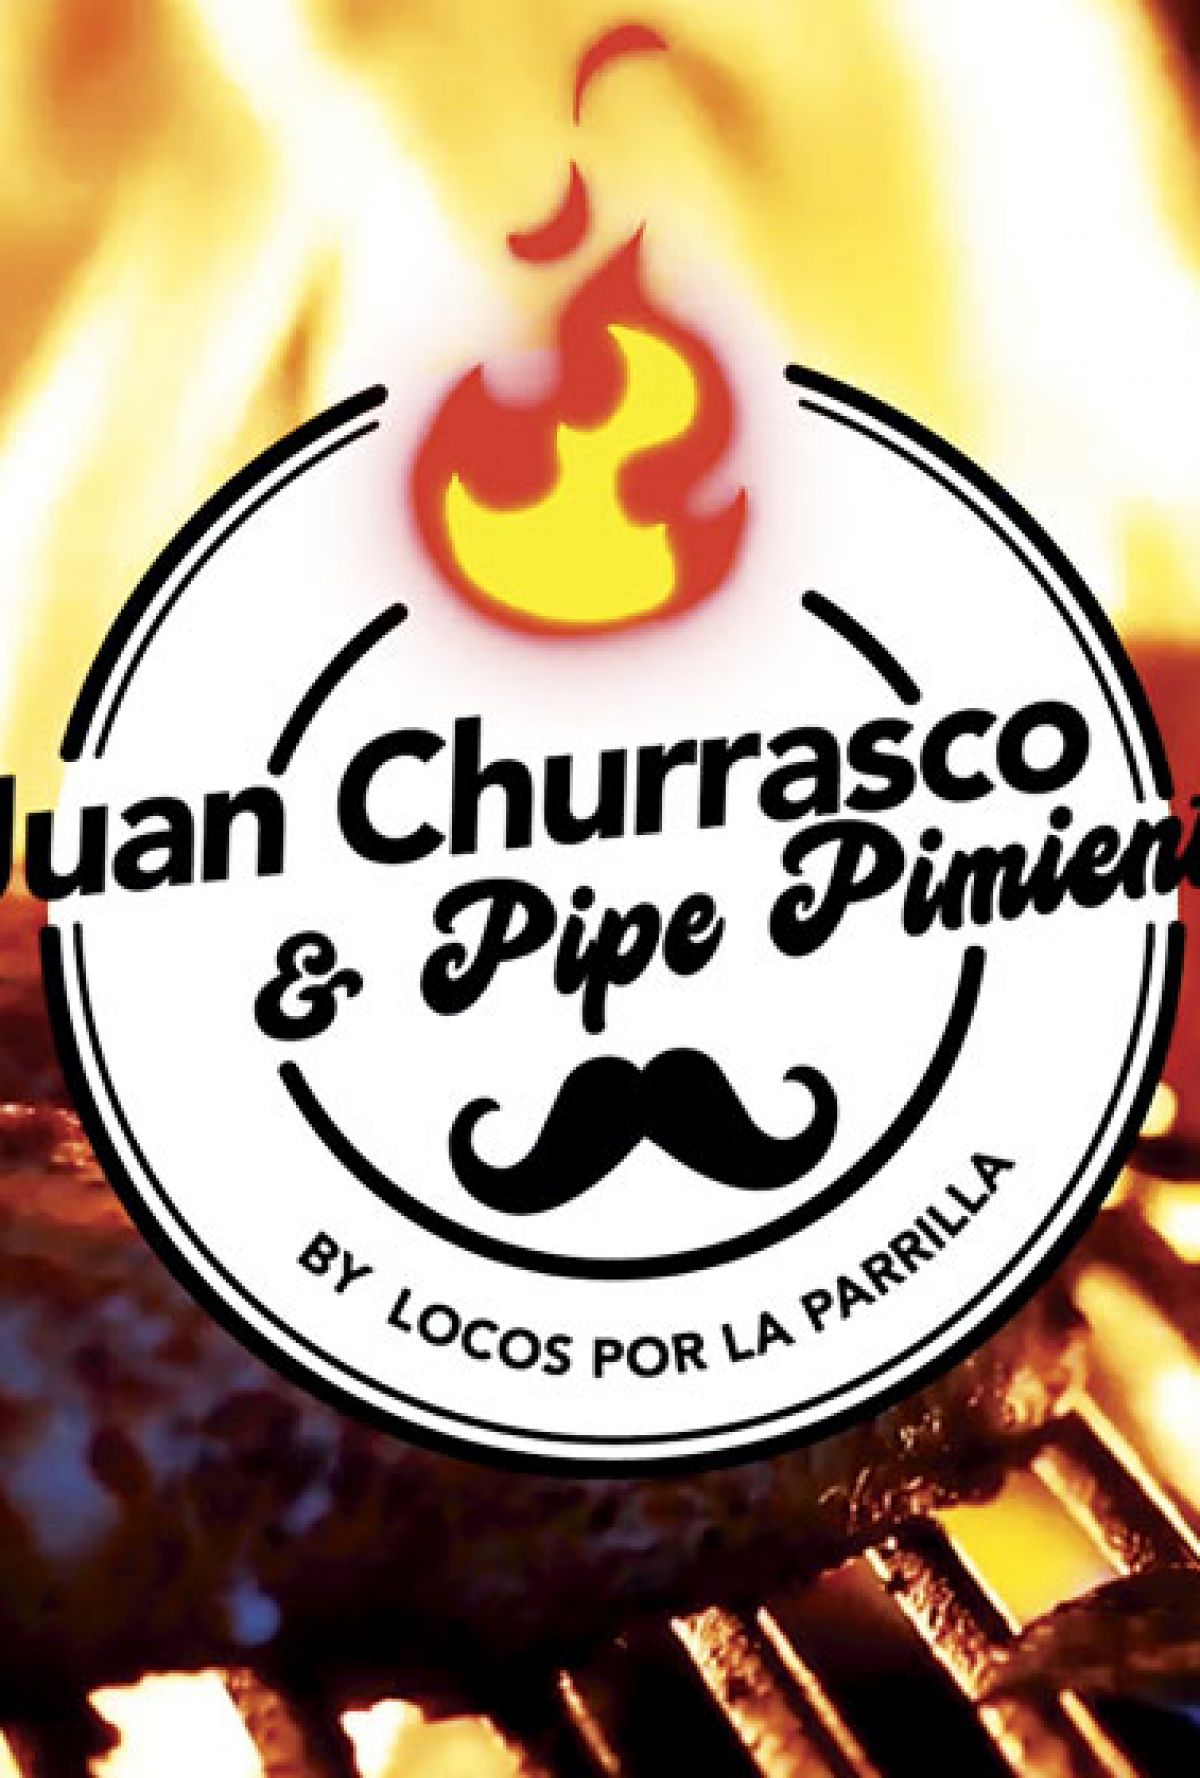 Juan Churrasco y Pipe Pimienta